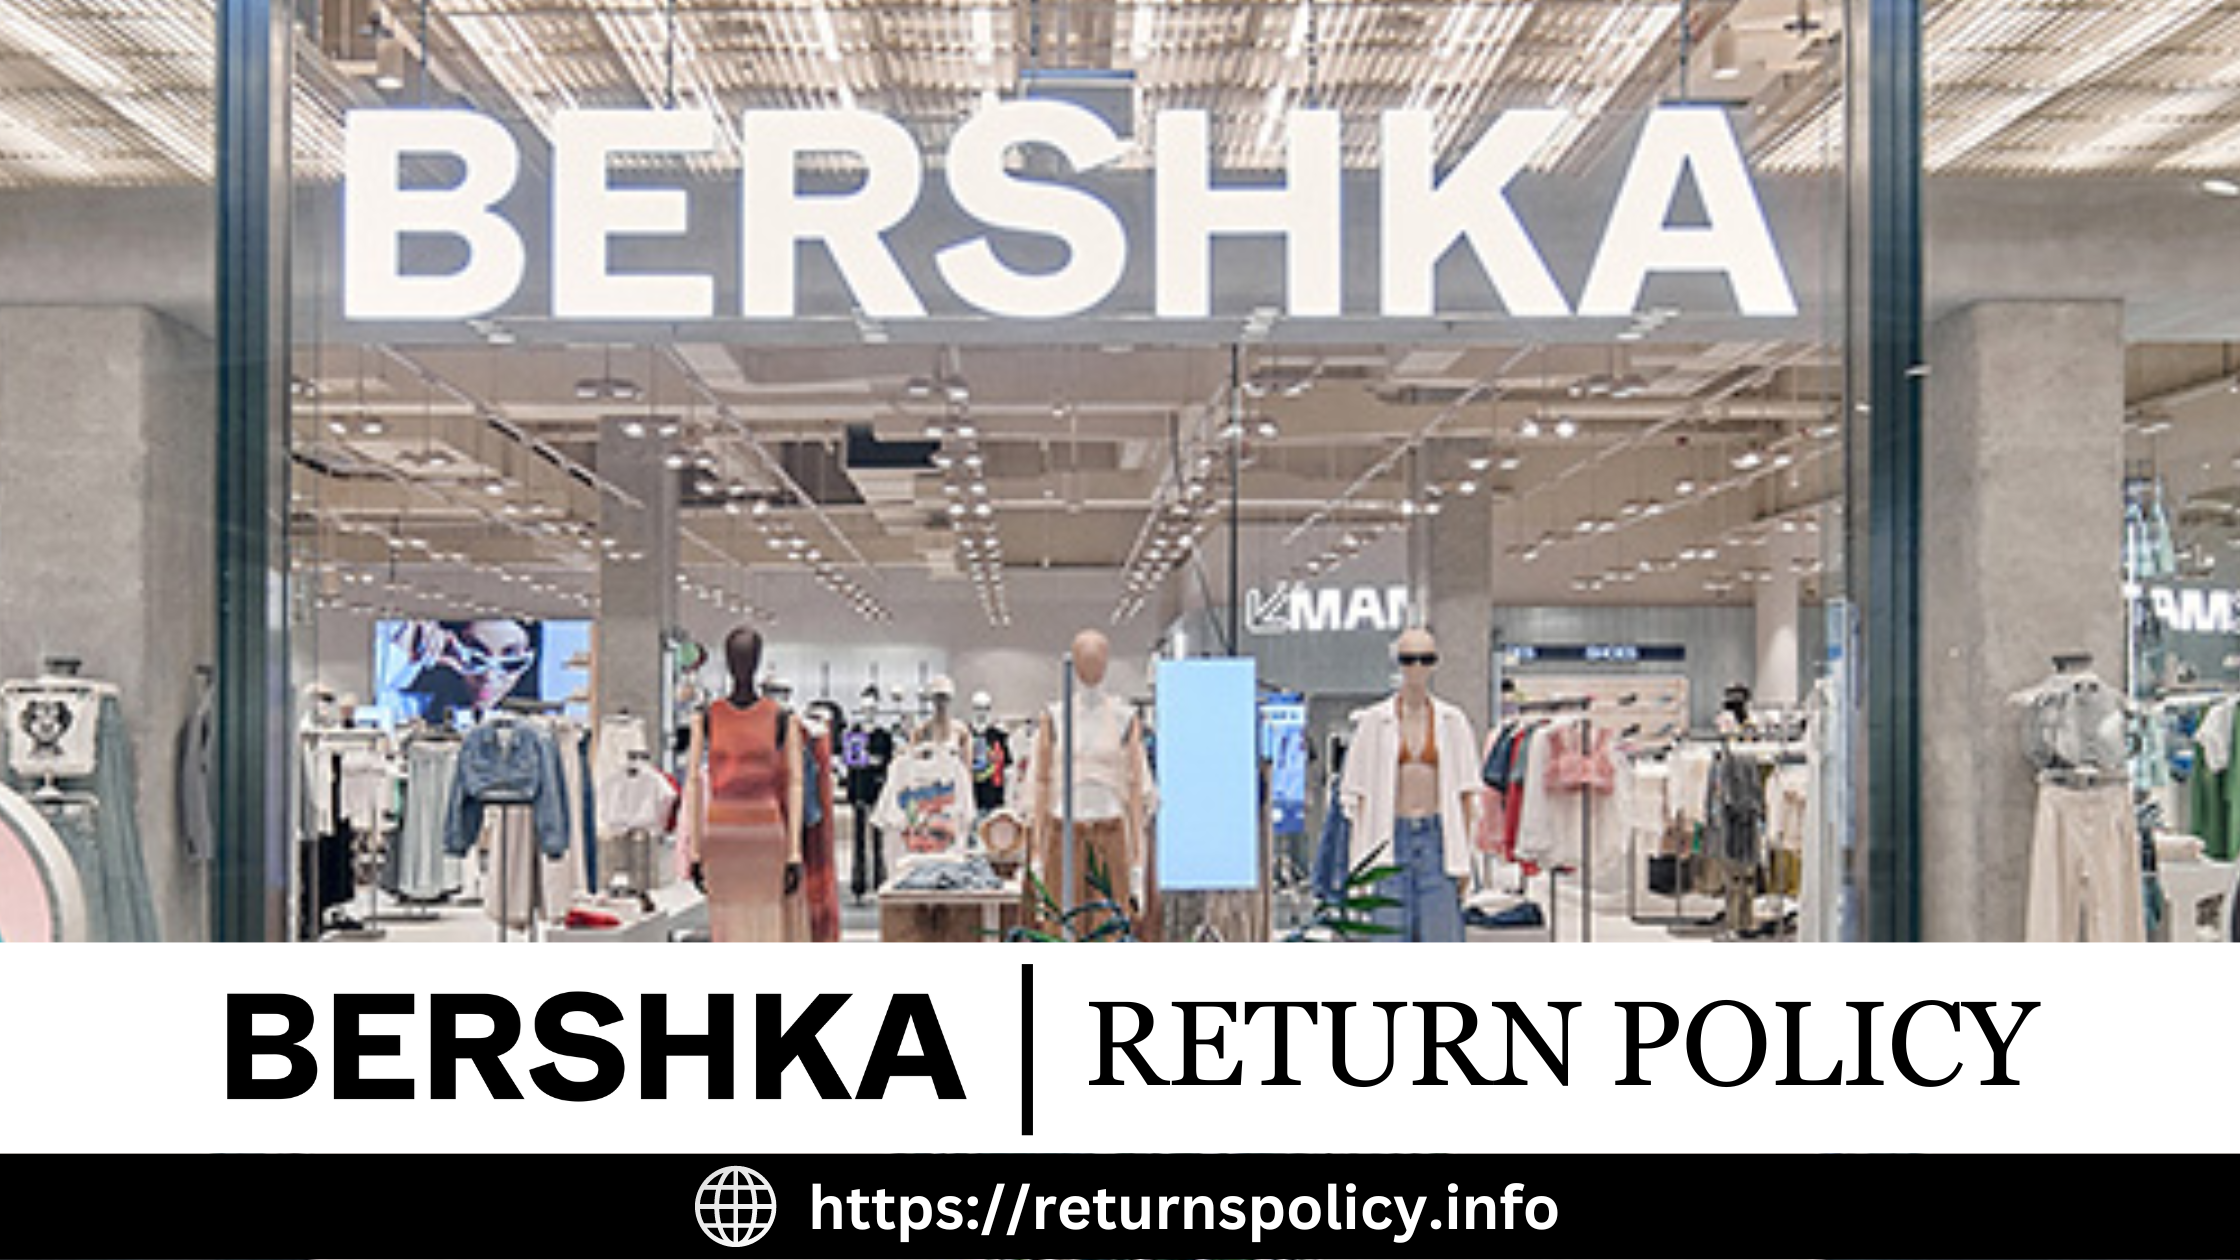 Bershka Return Policy